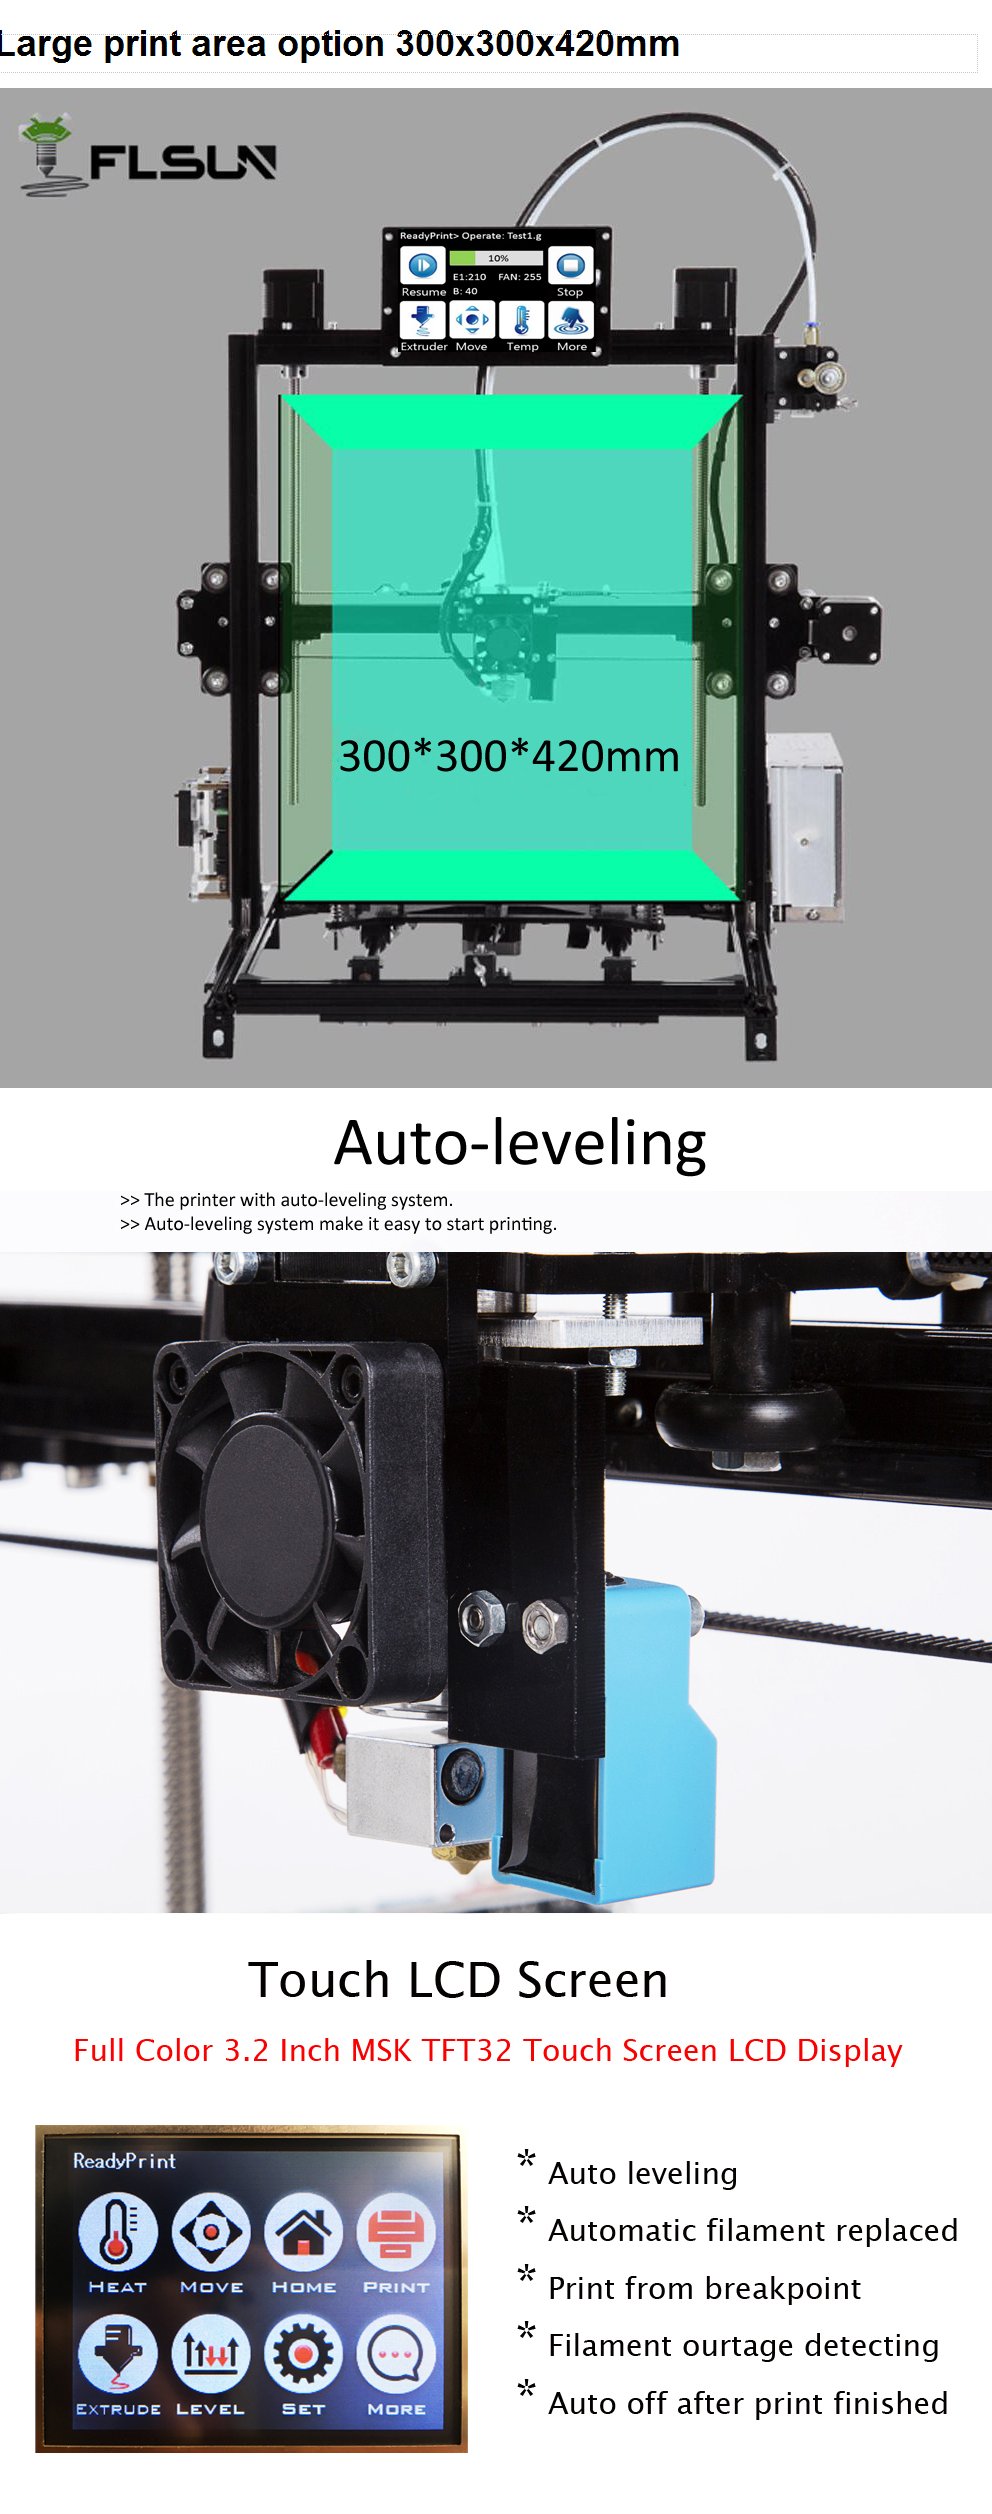 FLSUN® C Plus Desktop DIY 3D Printer With Touch Screen Dual Nozzle Auto Leveling Double Z-motors Support Flexible Filament 300*300*420mm Printing Size 7